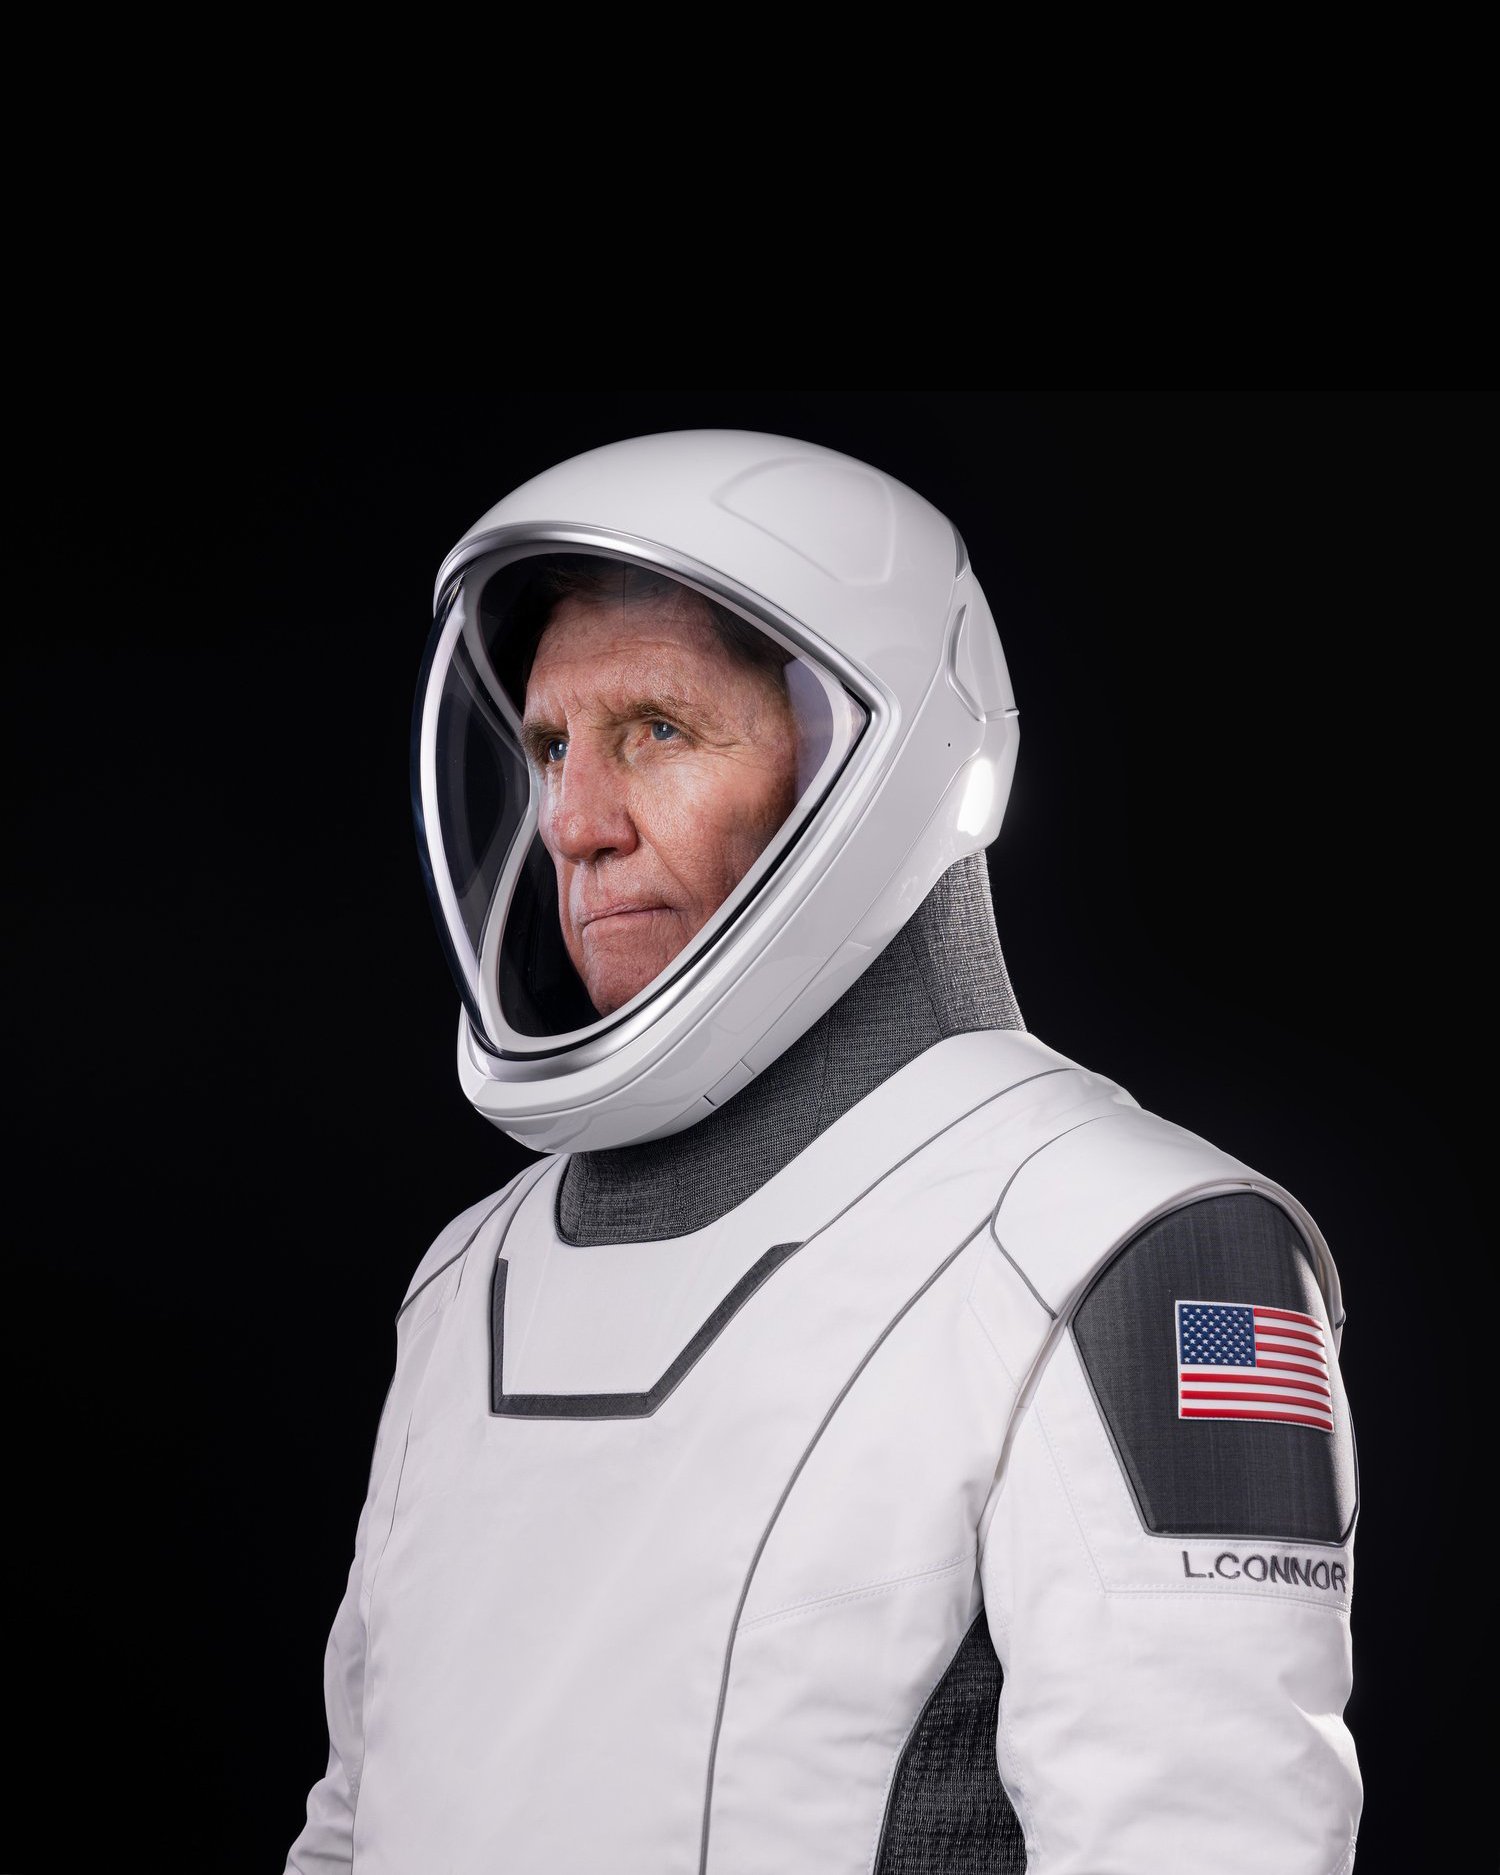 Axiom Ax-1 Astronaut, Connor, first to space, ocean depths in a year — Axiom Space